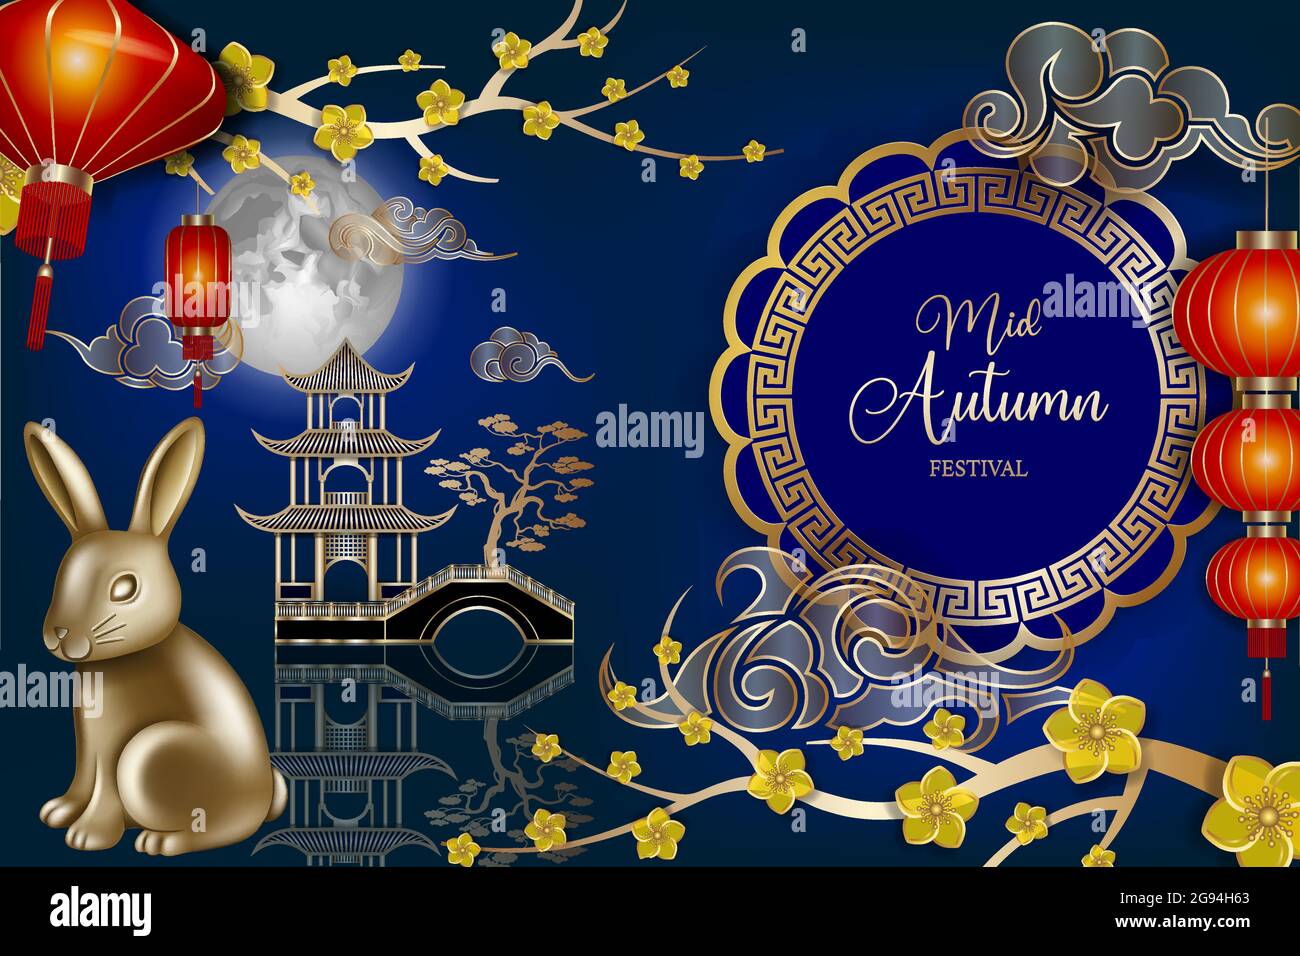 Festival chinois de mi-automne fond avec lanternes rouges, lapin doré, fleurs et décorations Illustration de Vecteur